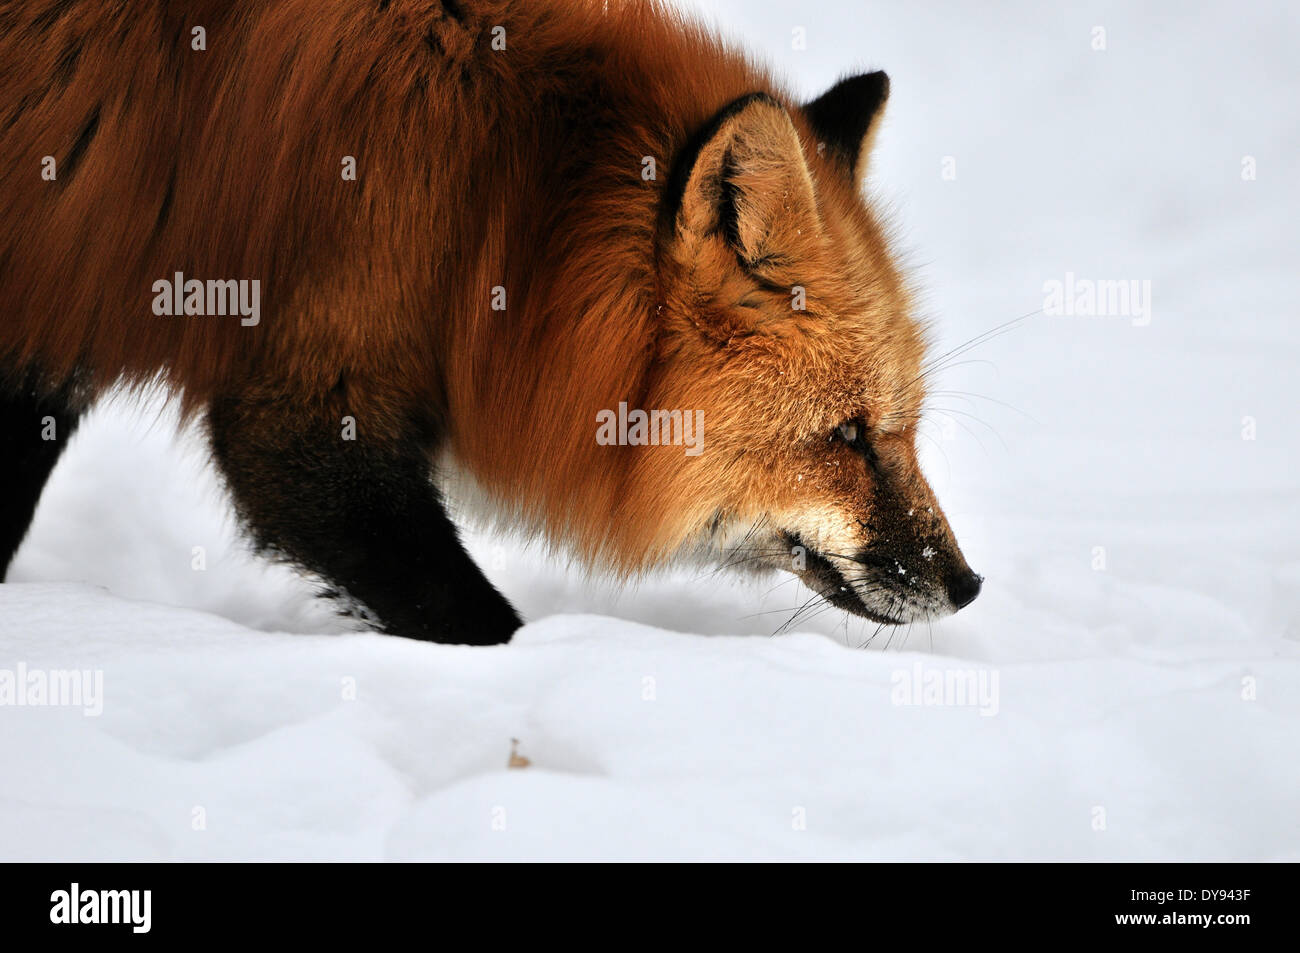 Red Fox Fox predator canidi europei furbo fox Vulpes vulpes volpe volpe rossa cappotto invernale pelle d'inverno la neve invernale di anima animale Foto Stock